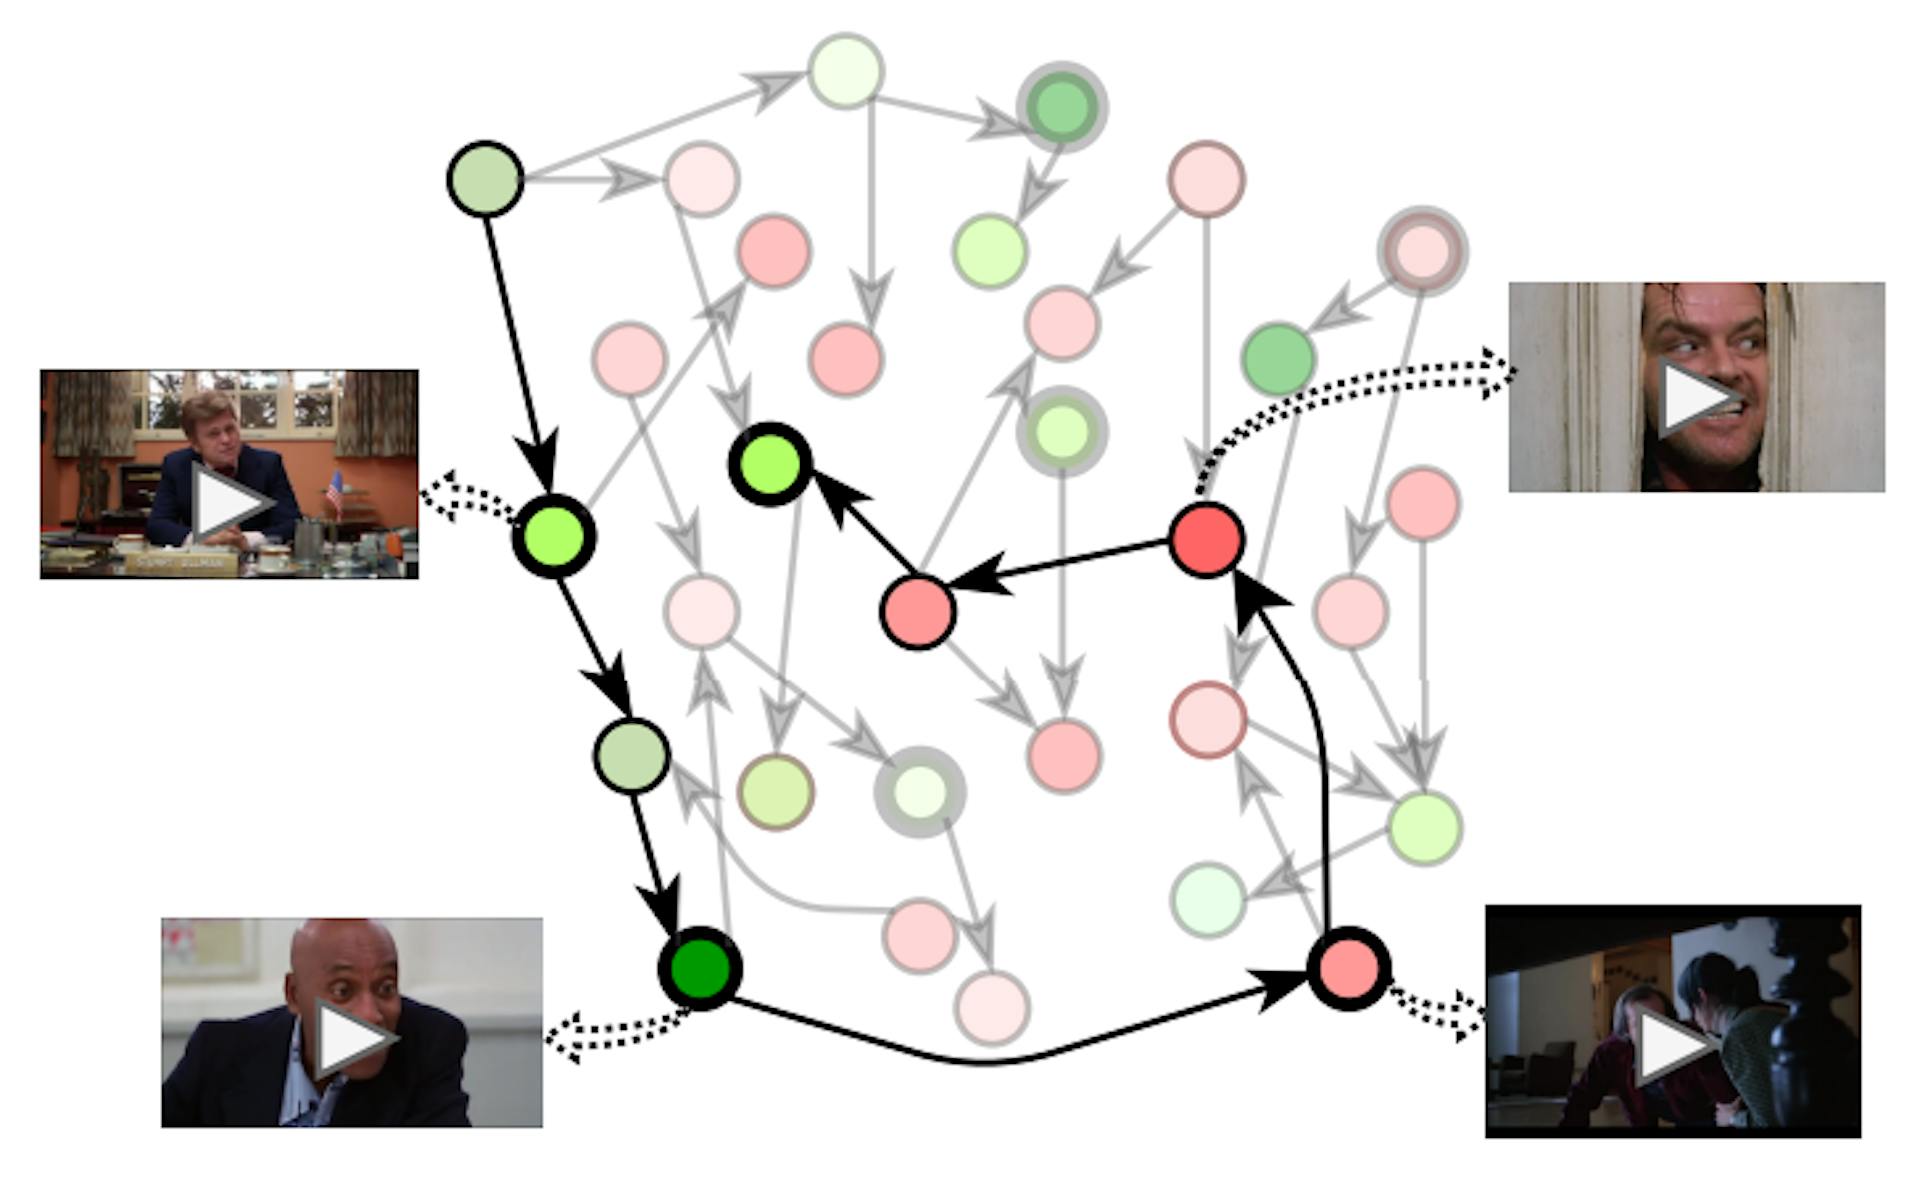 図 2. GRAPHTRAILER: 映画は、ノードがショットで、エッジがショット間の関係を示すグラフです。各ショットは、感情スコア (正/負の値を表す緑/赤の濃淡) と重要なイベントを表すラベル (太い円) によって特徴付けられます。当社のアルゴリズムは、グラフ内をウォークして (太線)、提案トレーラー シーケンスを生成します。